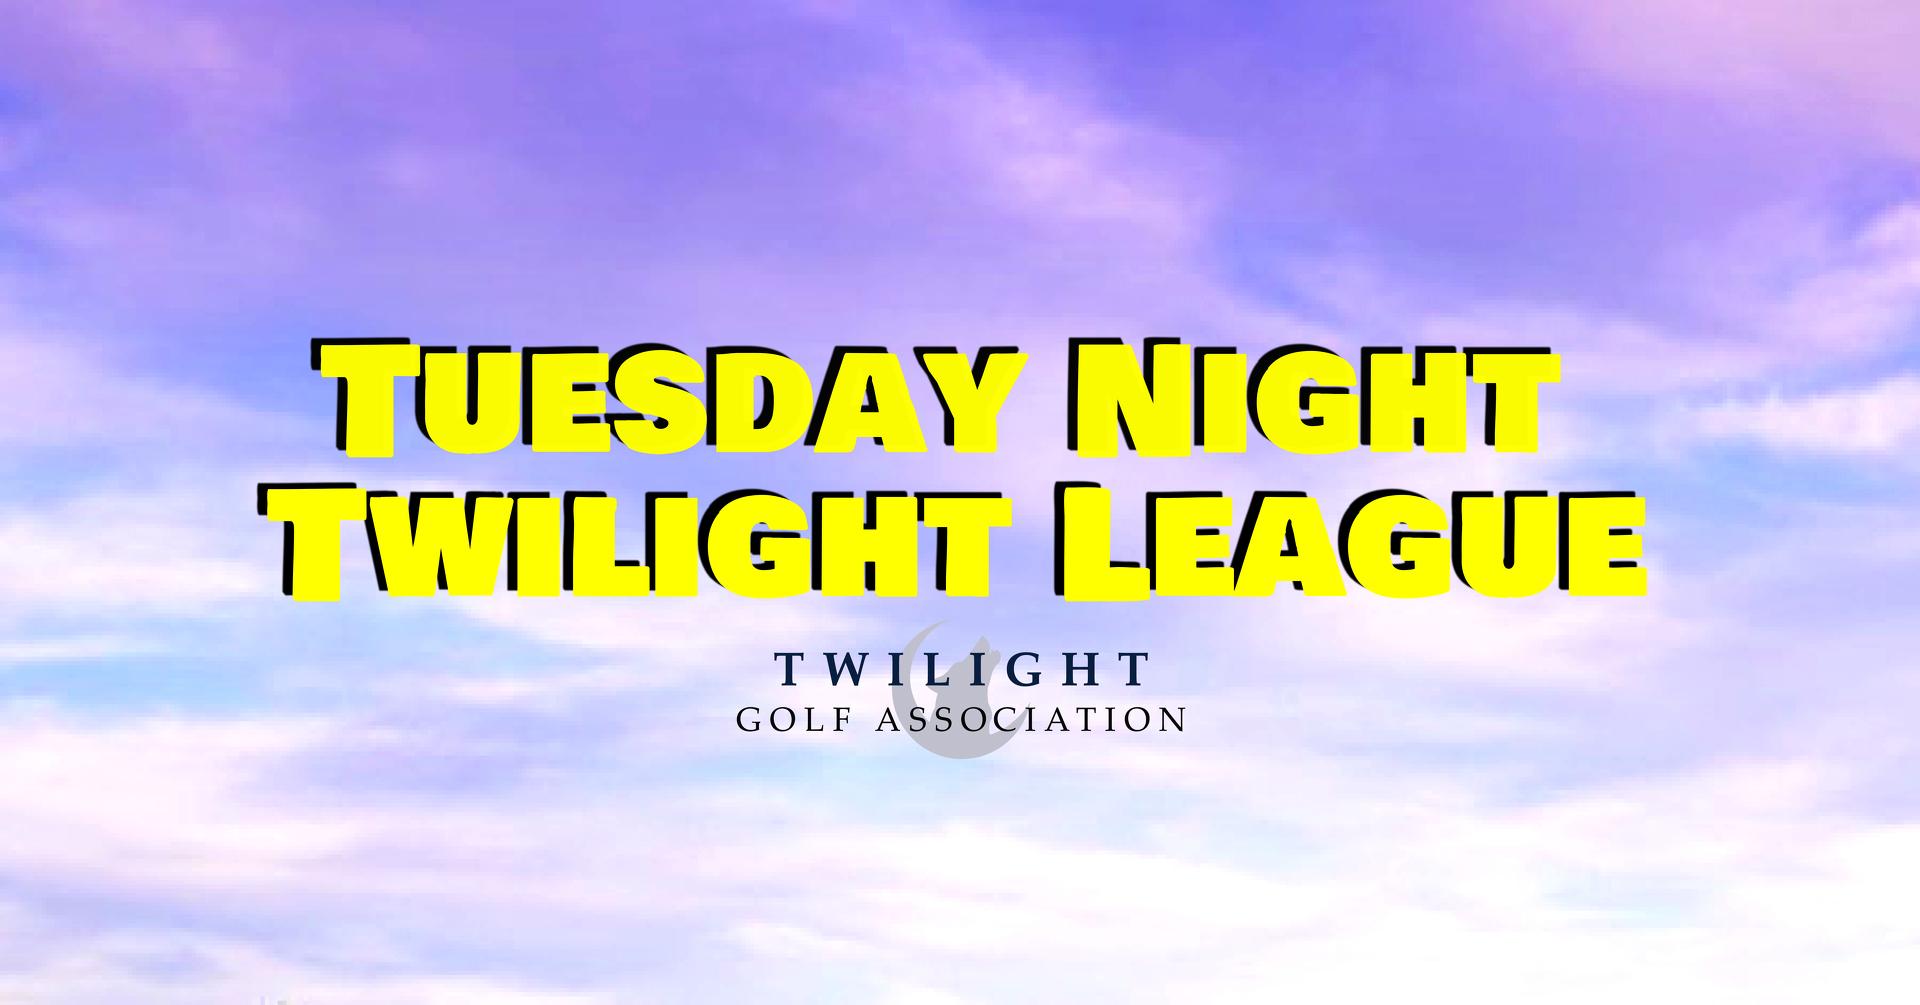 Tuesday Night Twilight League at Pueblo El Mirage Golf Course